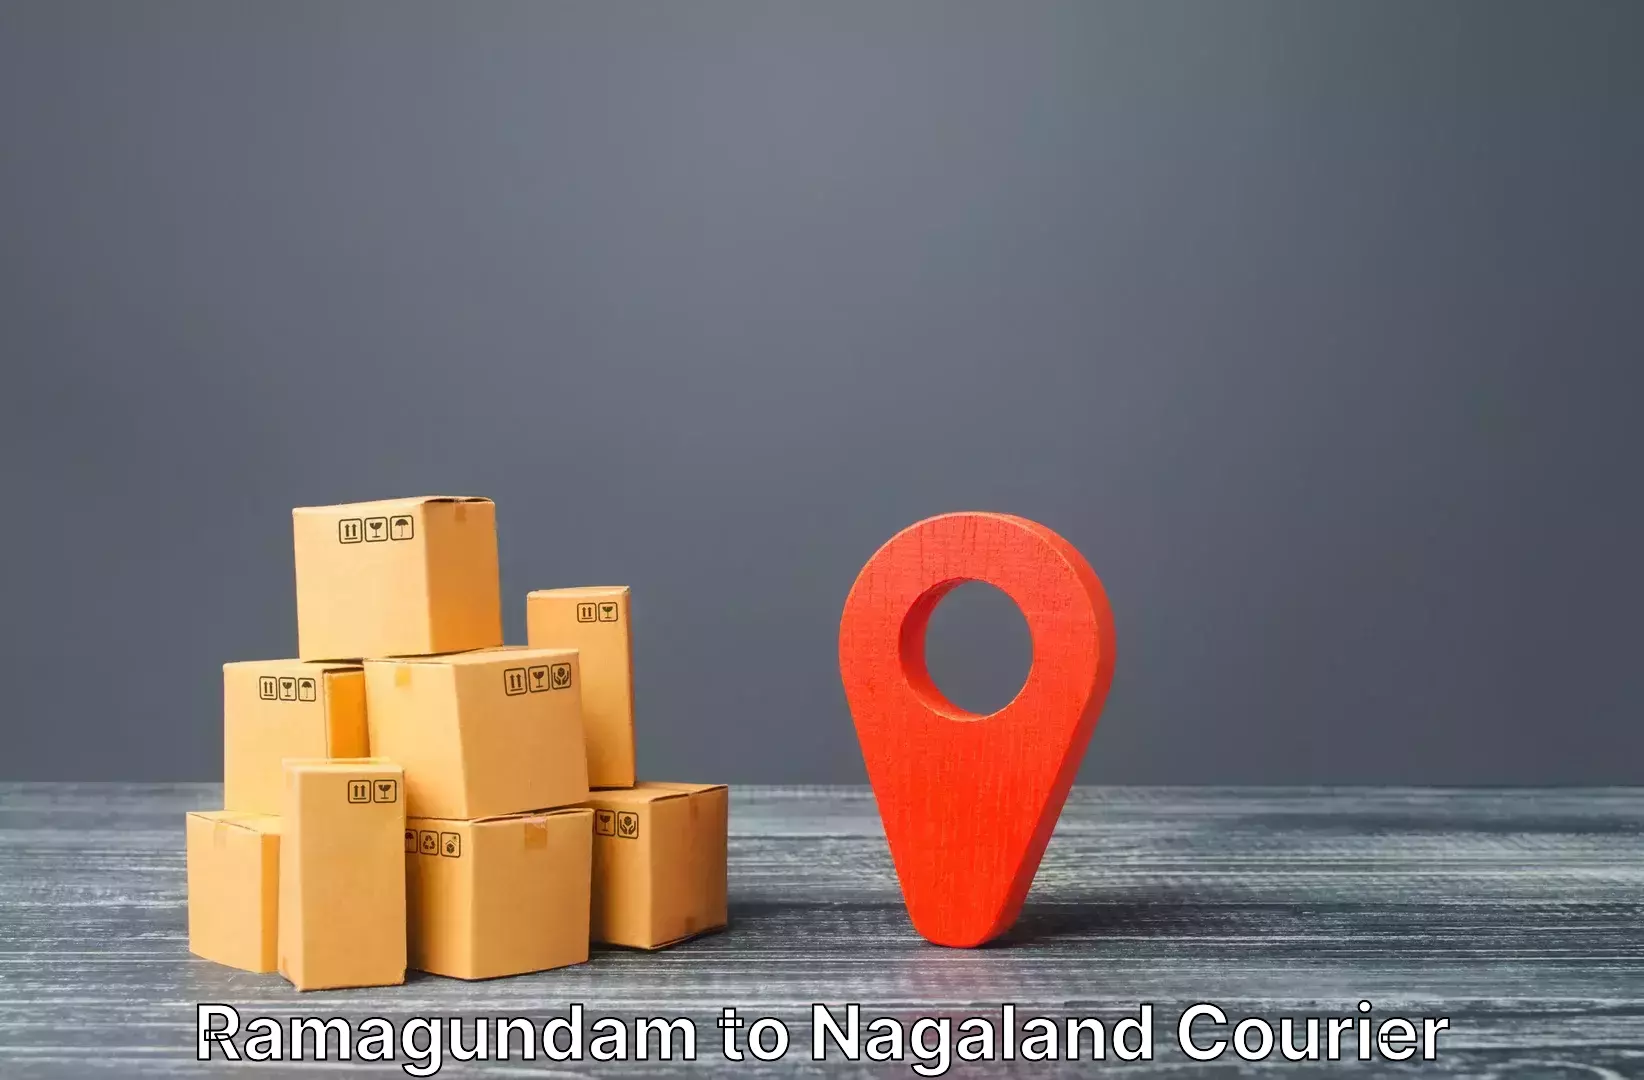 Luggage shipment specialists Ramagundam to NIT Nagaland